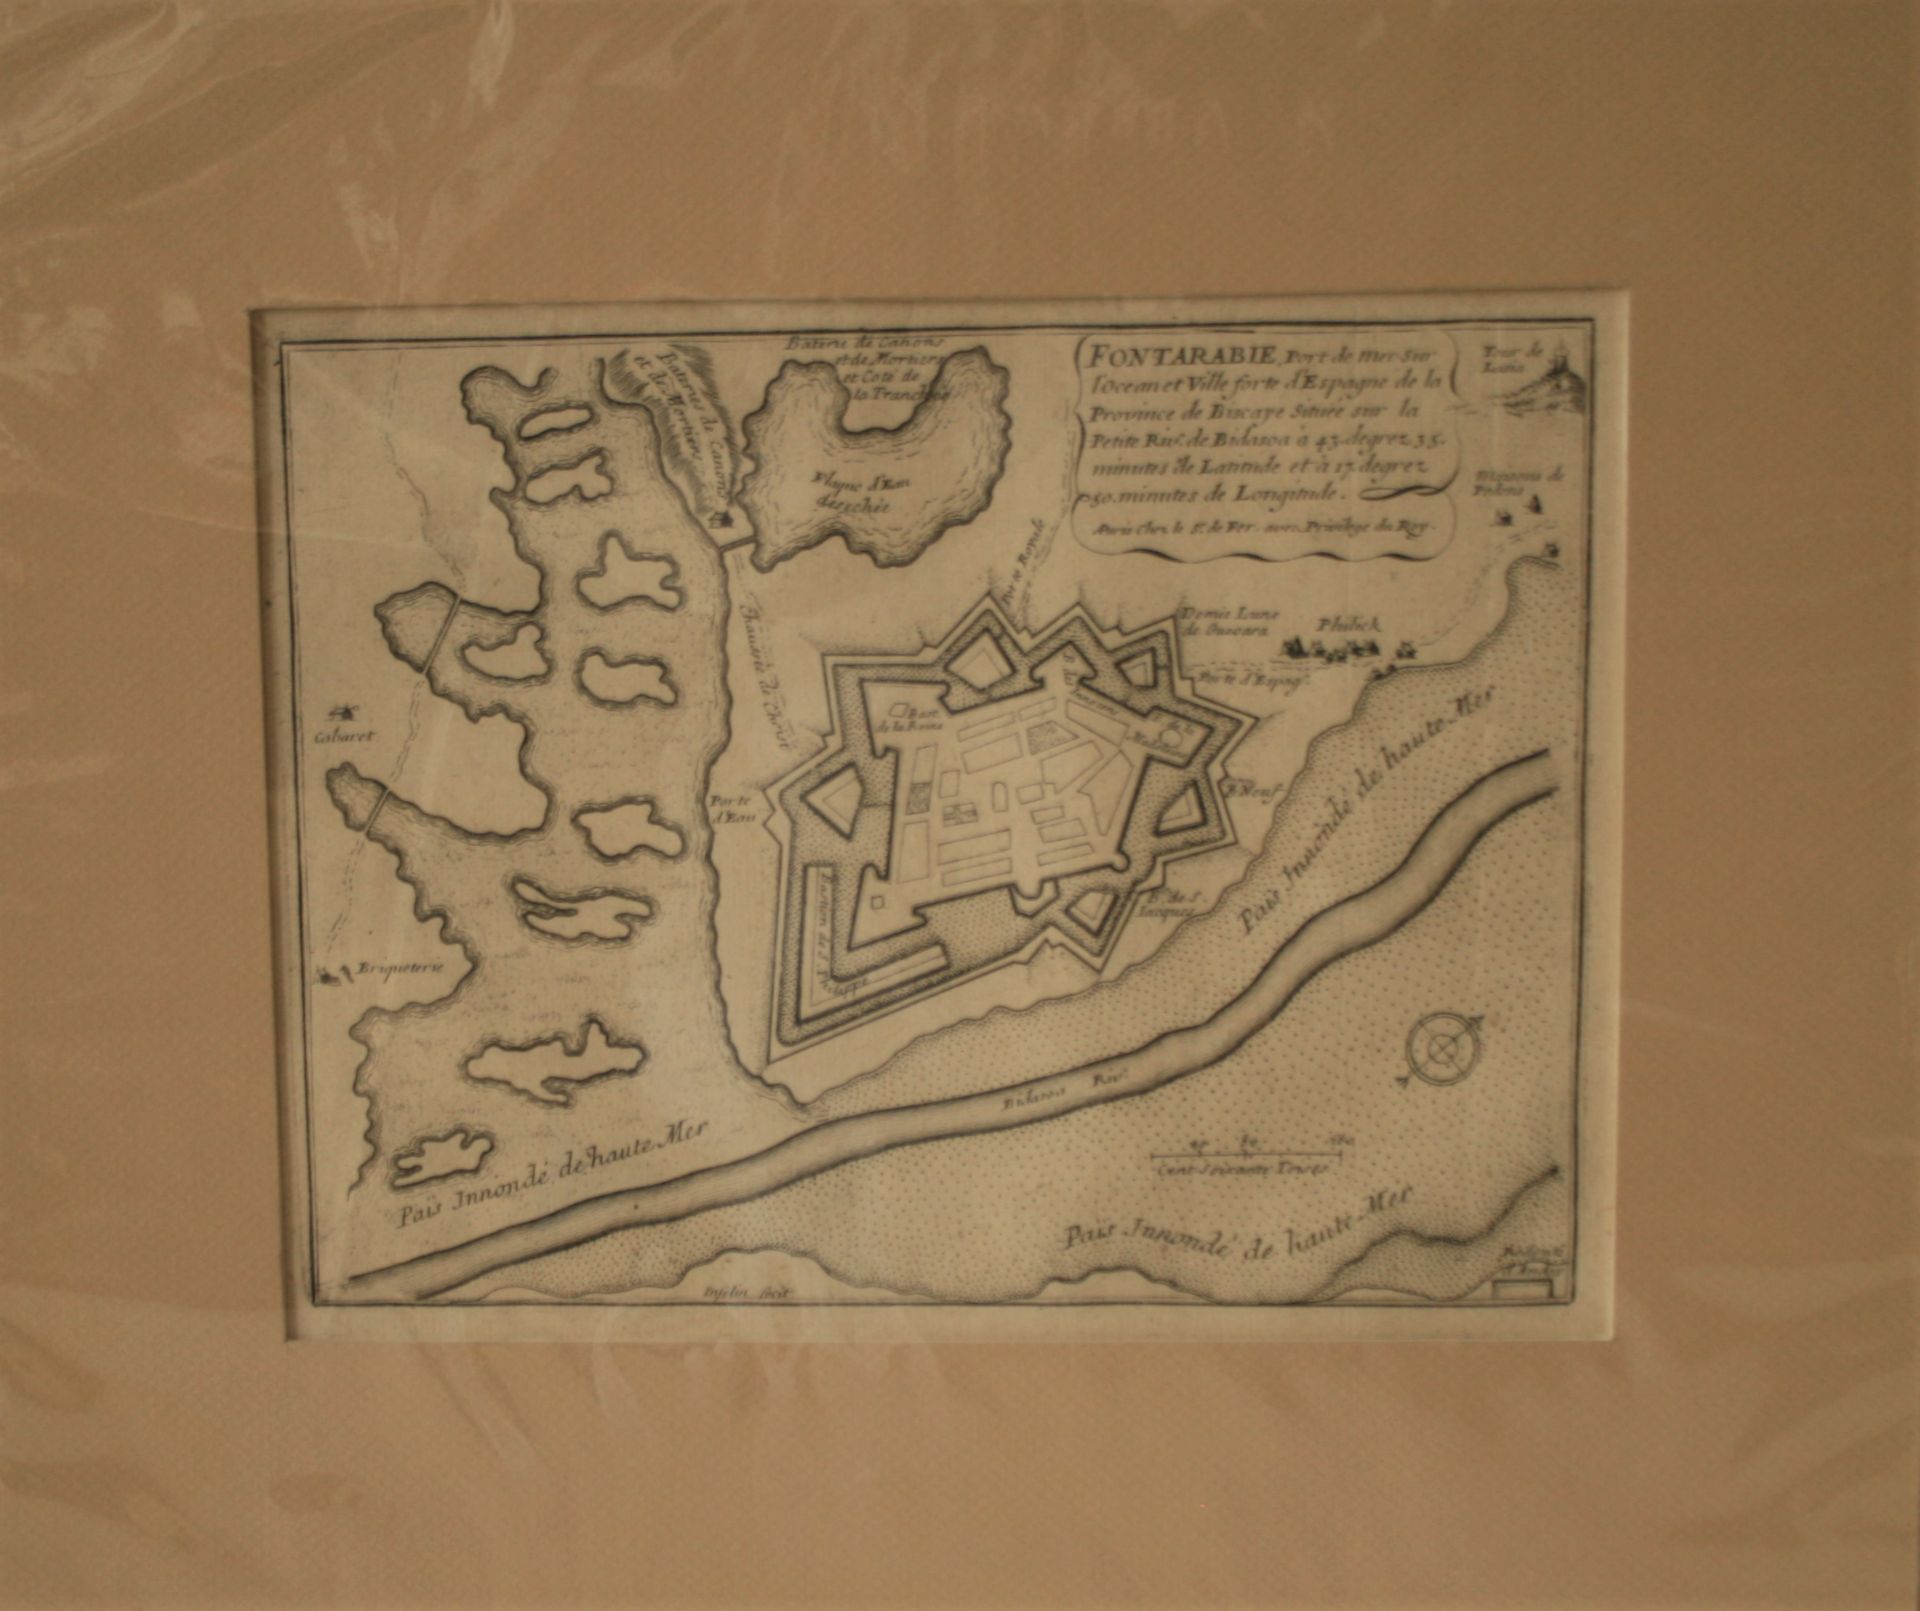 Plan de la place forte de FONTARABIE (Fuenterrabia Hondarribia) par Nicolas de FER, [...]